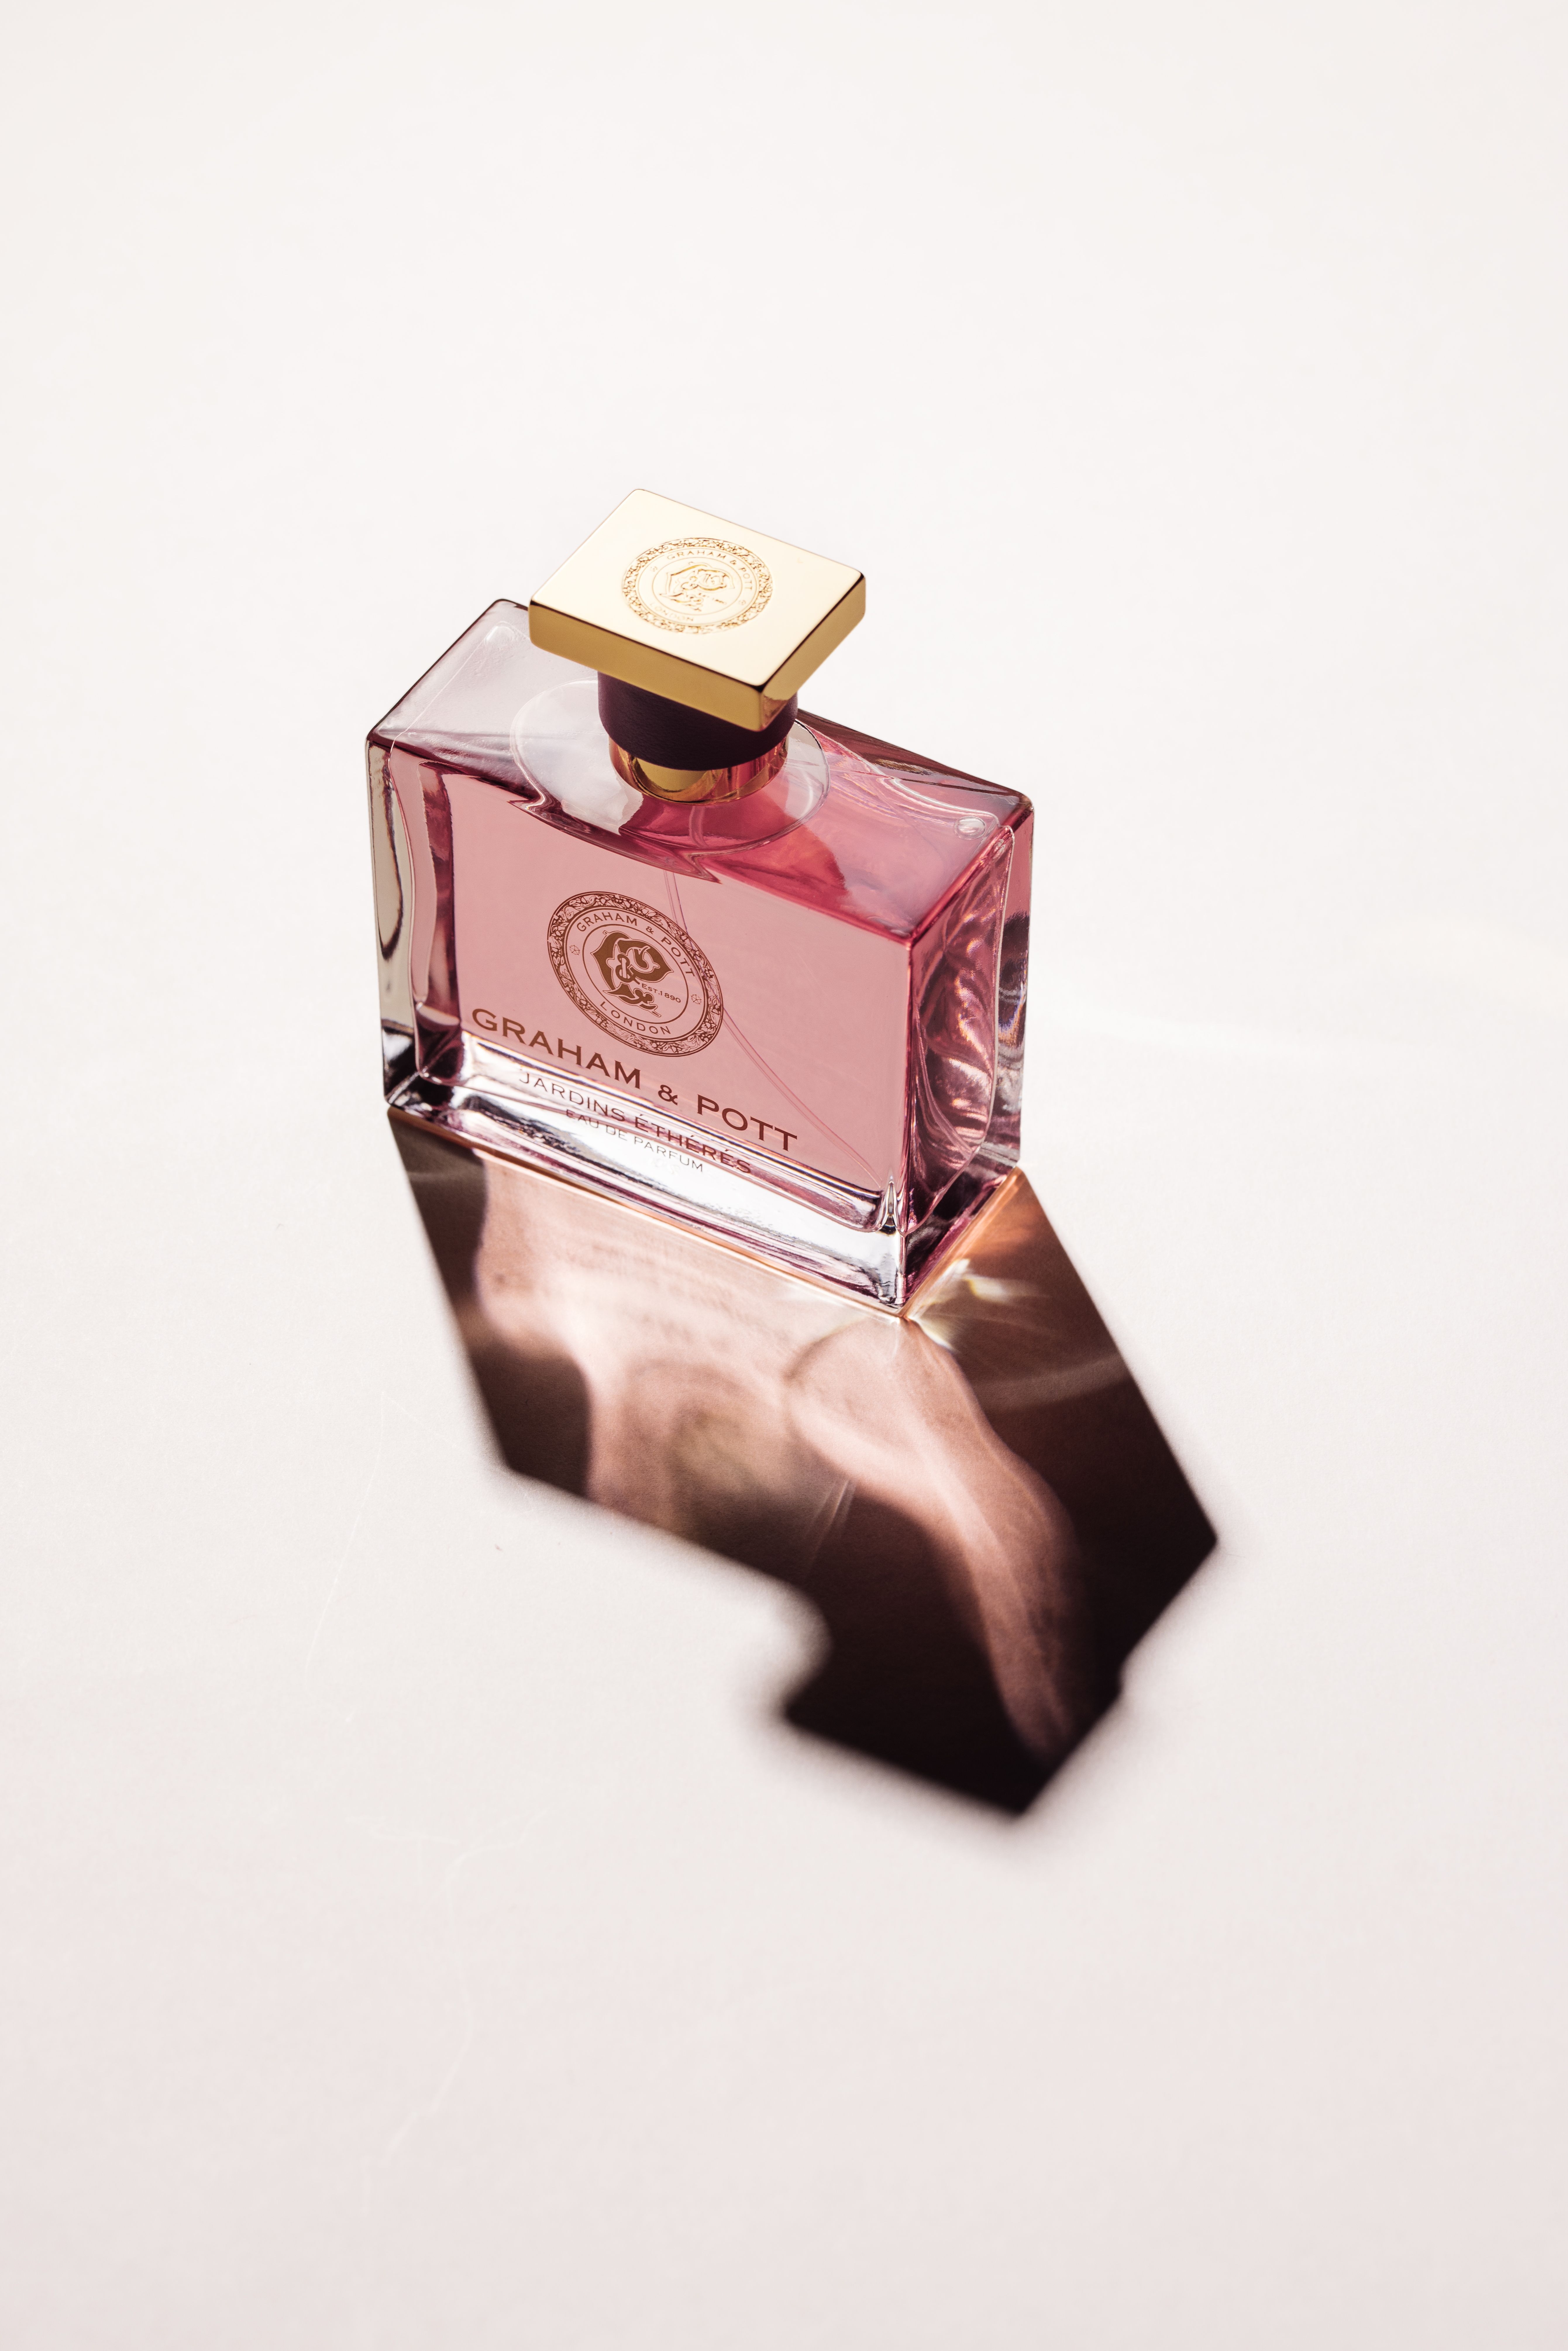 Jardins Éthérés GRAHAM & POTT perfume - a new fragrance for women and ...